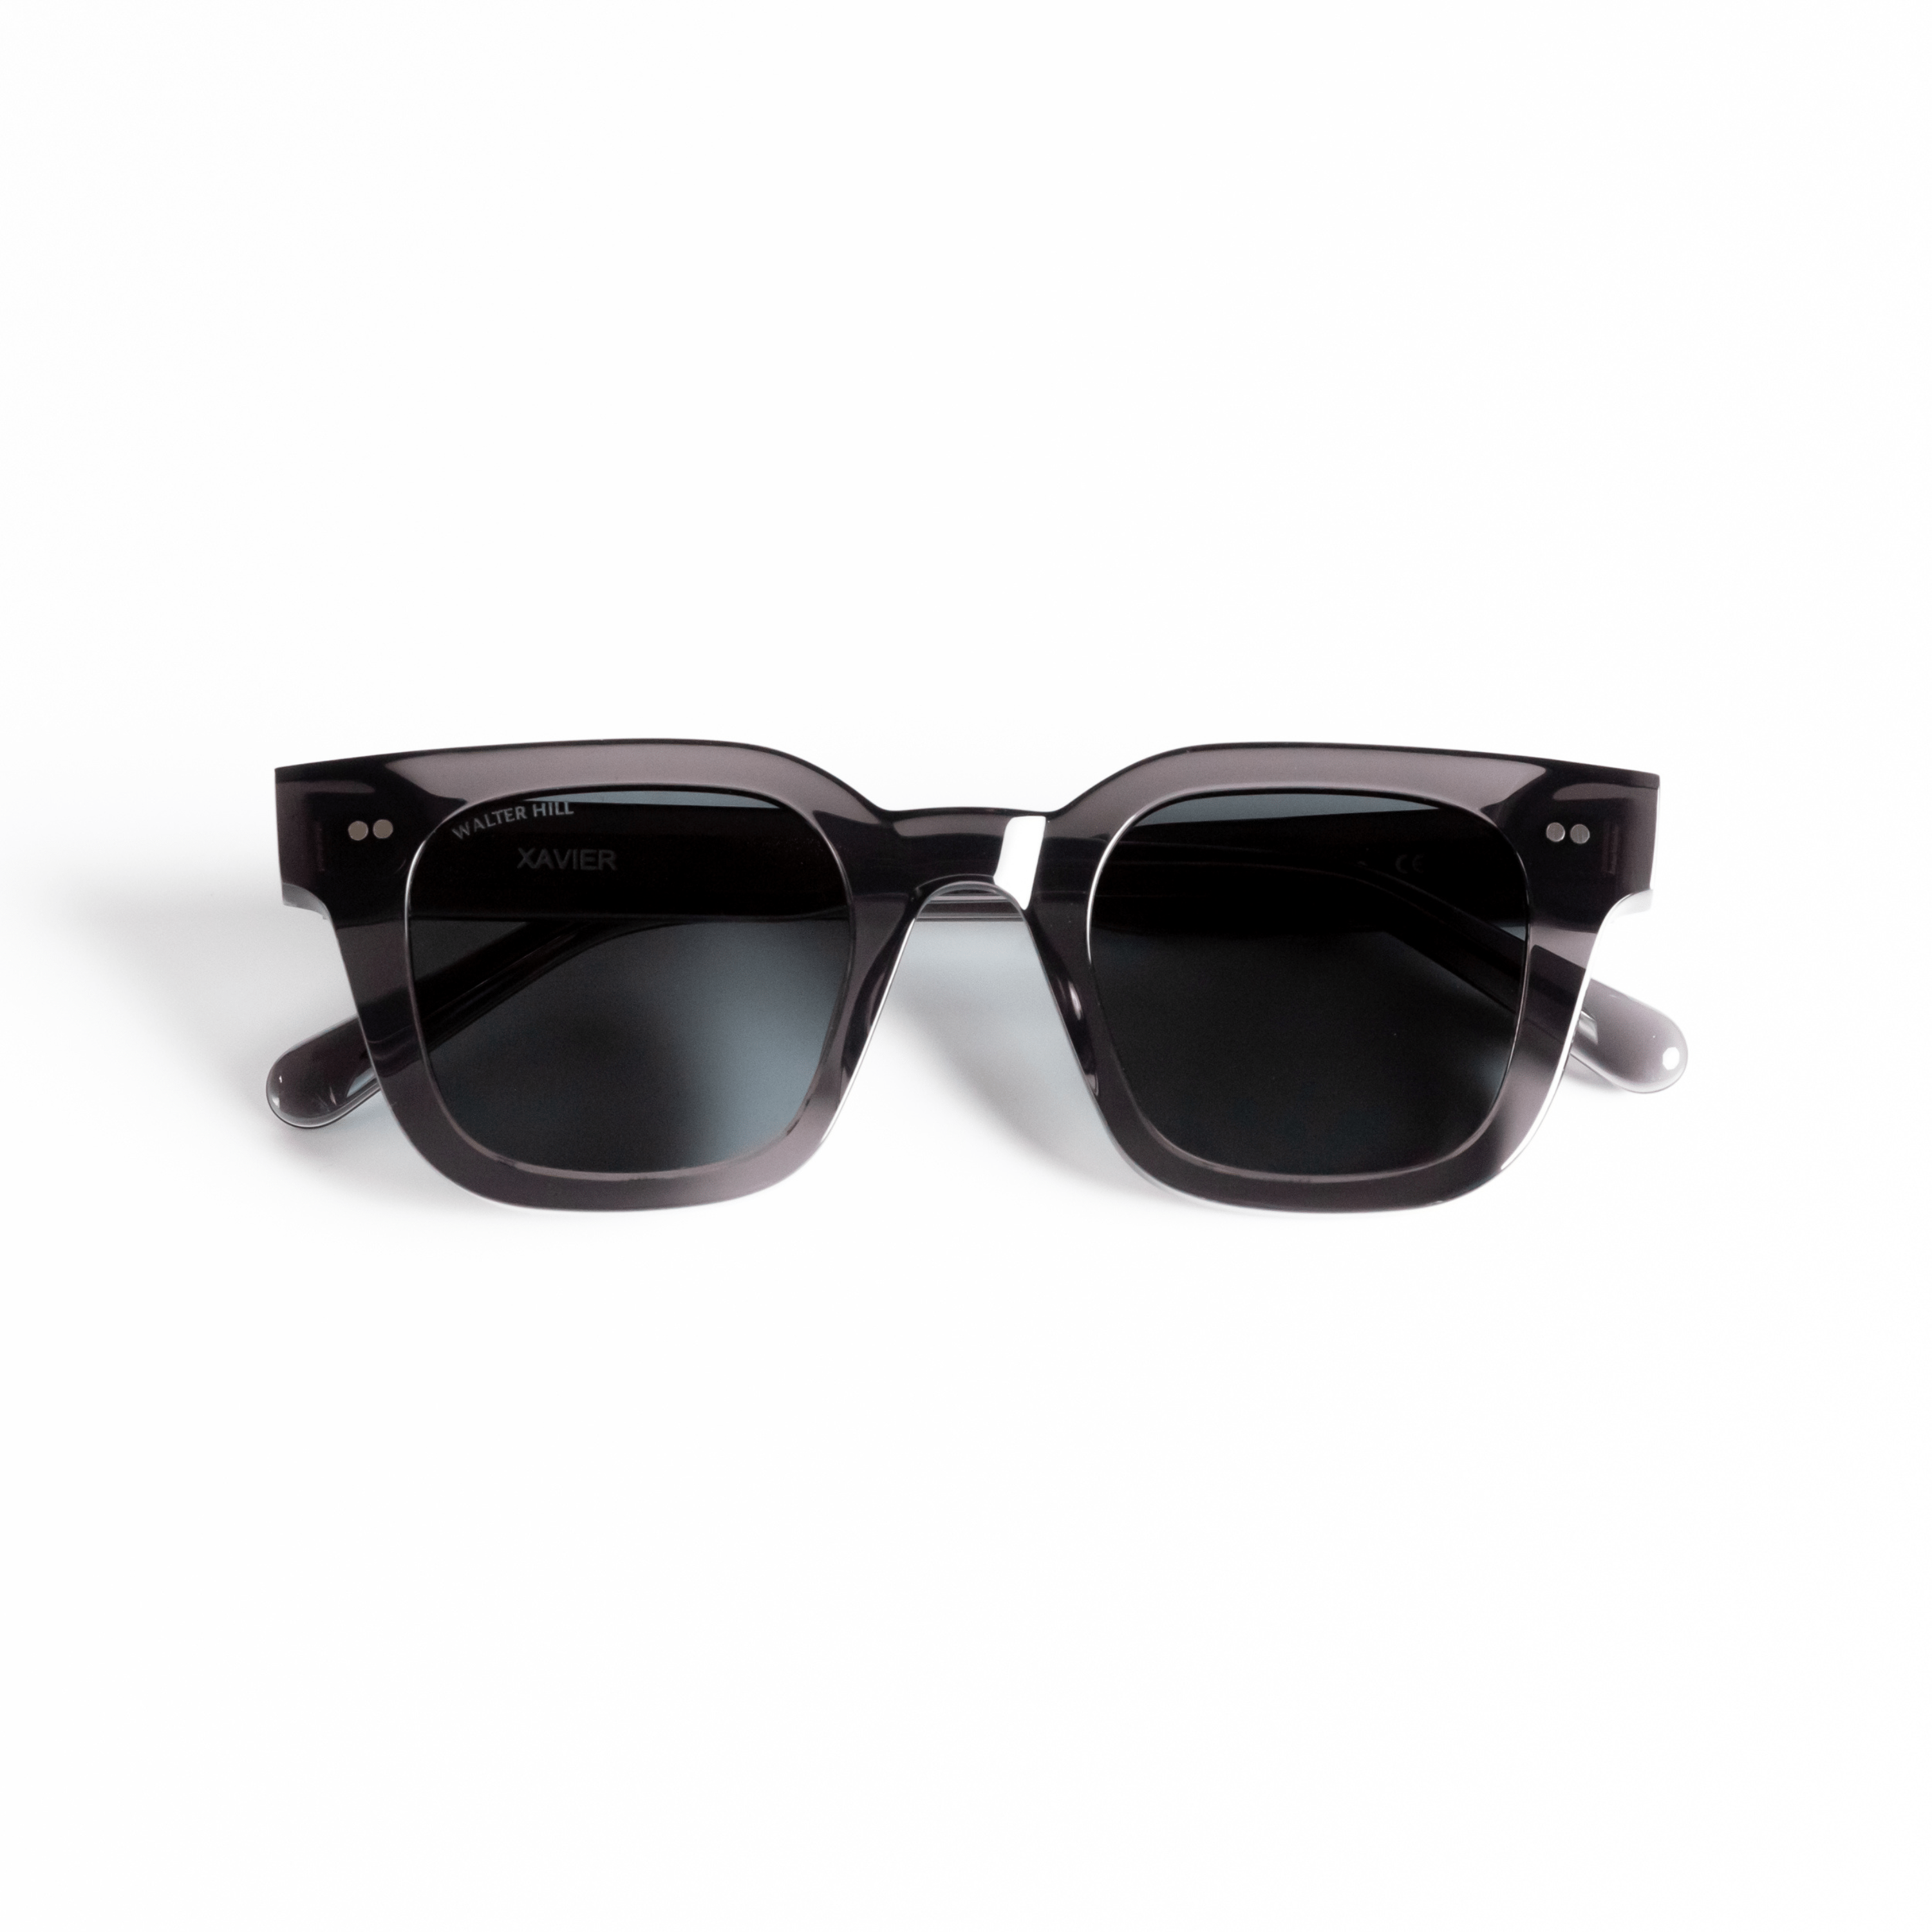 Walter Hill Sunglasses Dark Gray / Standard / Polarized Cat.3 XAVIER - Dark Gray